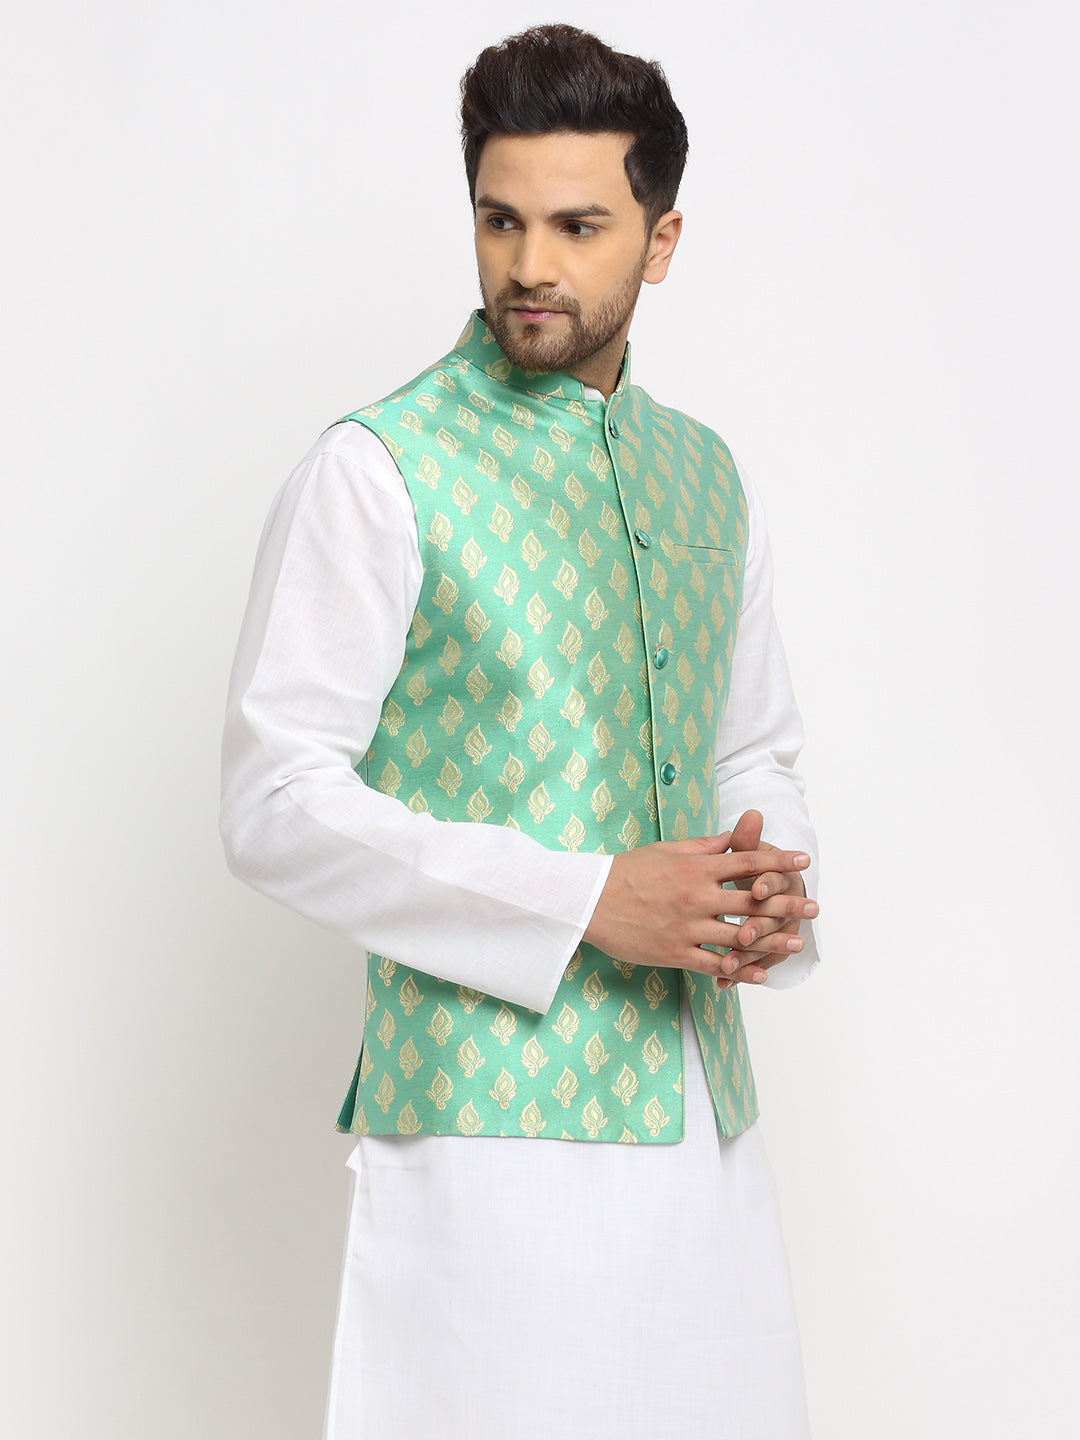 New Designer Men Aqua Green Brocade Nehru Jacket With Golden Work By Treemoda